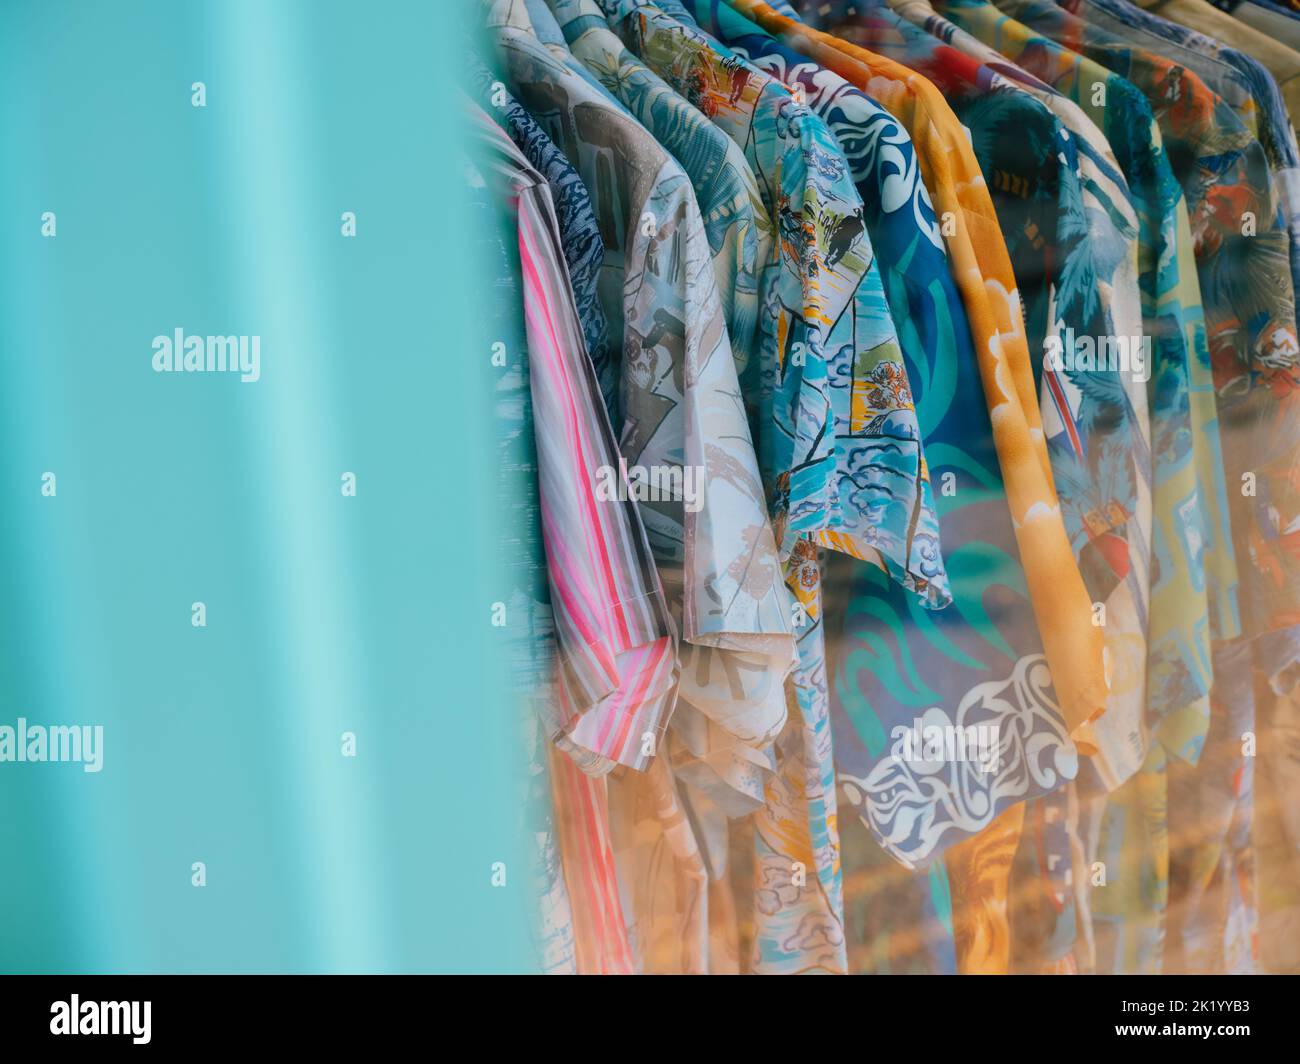 Camisas de surf de verano coloridas estilo hawaiano vintage en un estante en una tienda de ropa retro de verano - guardarropa de verano Foto de stock